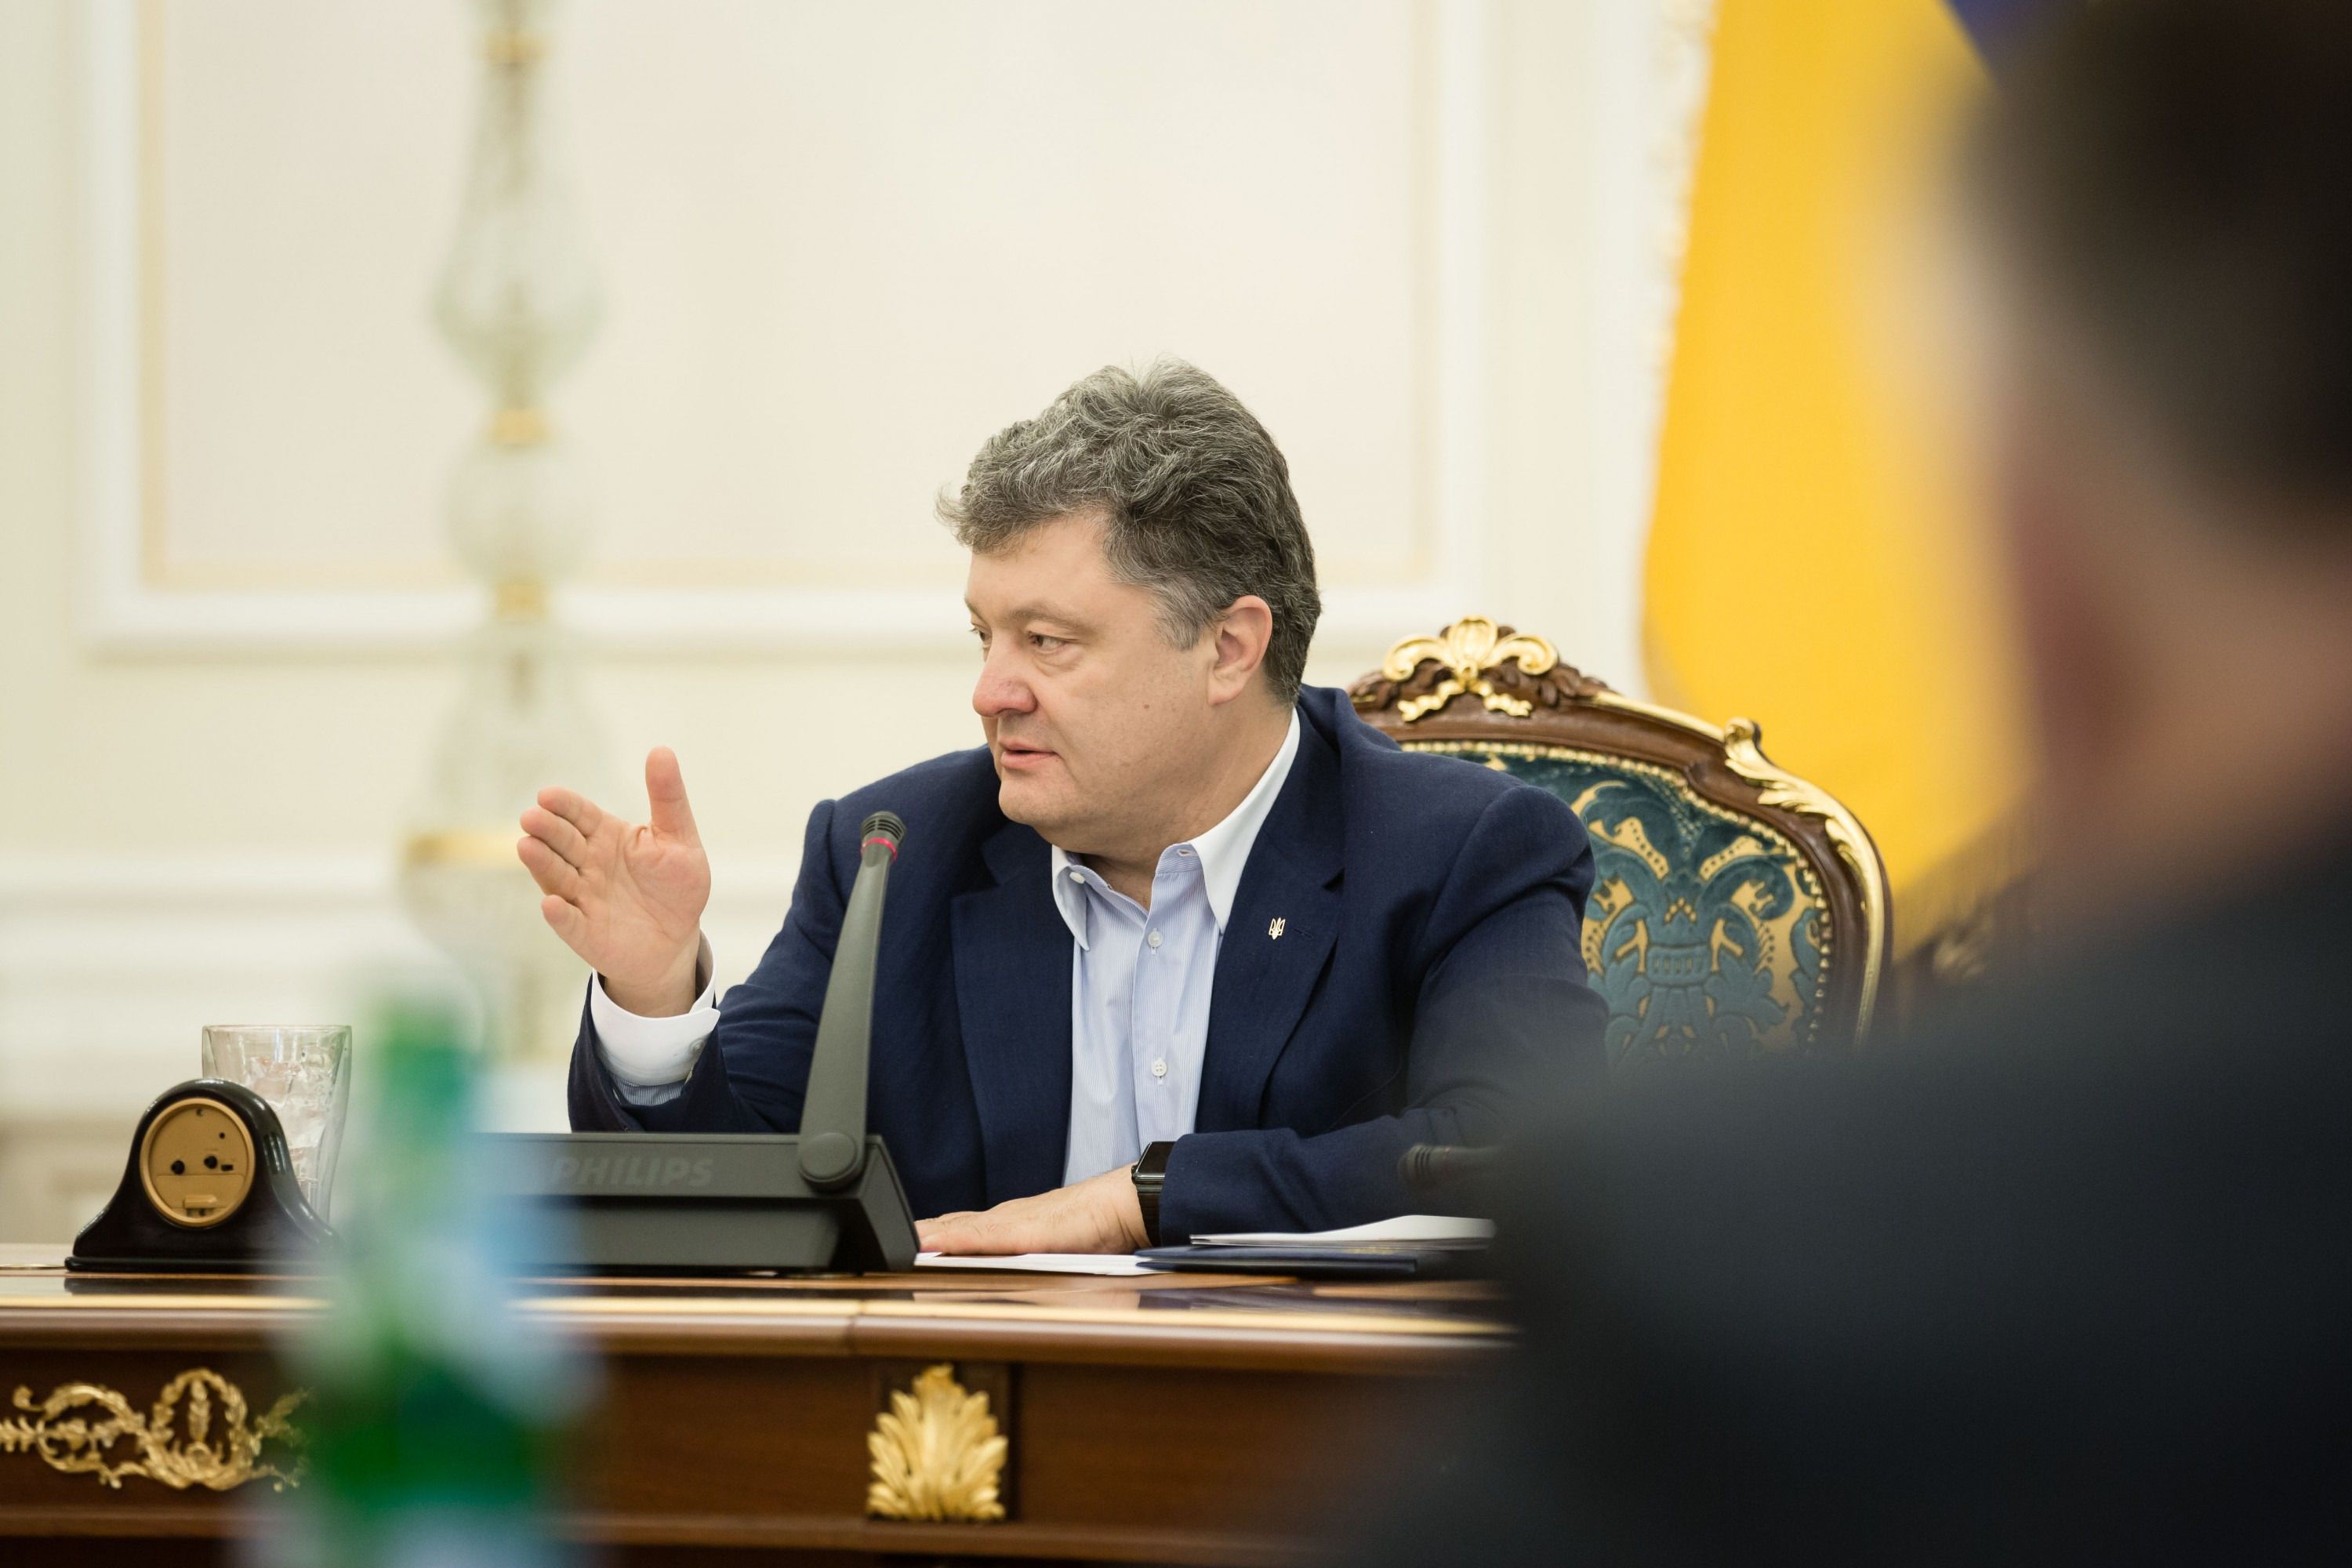 Суд відкрив провадження щодо заборони виїзду з України Порошенко і 180 топ-чиновників. Суд буде розглядати справу без повідомлення учасників справи.